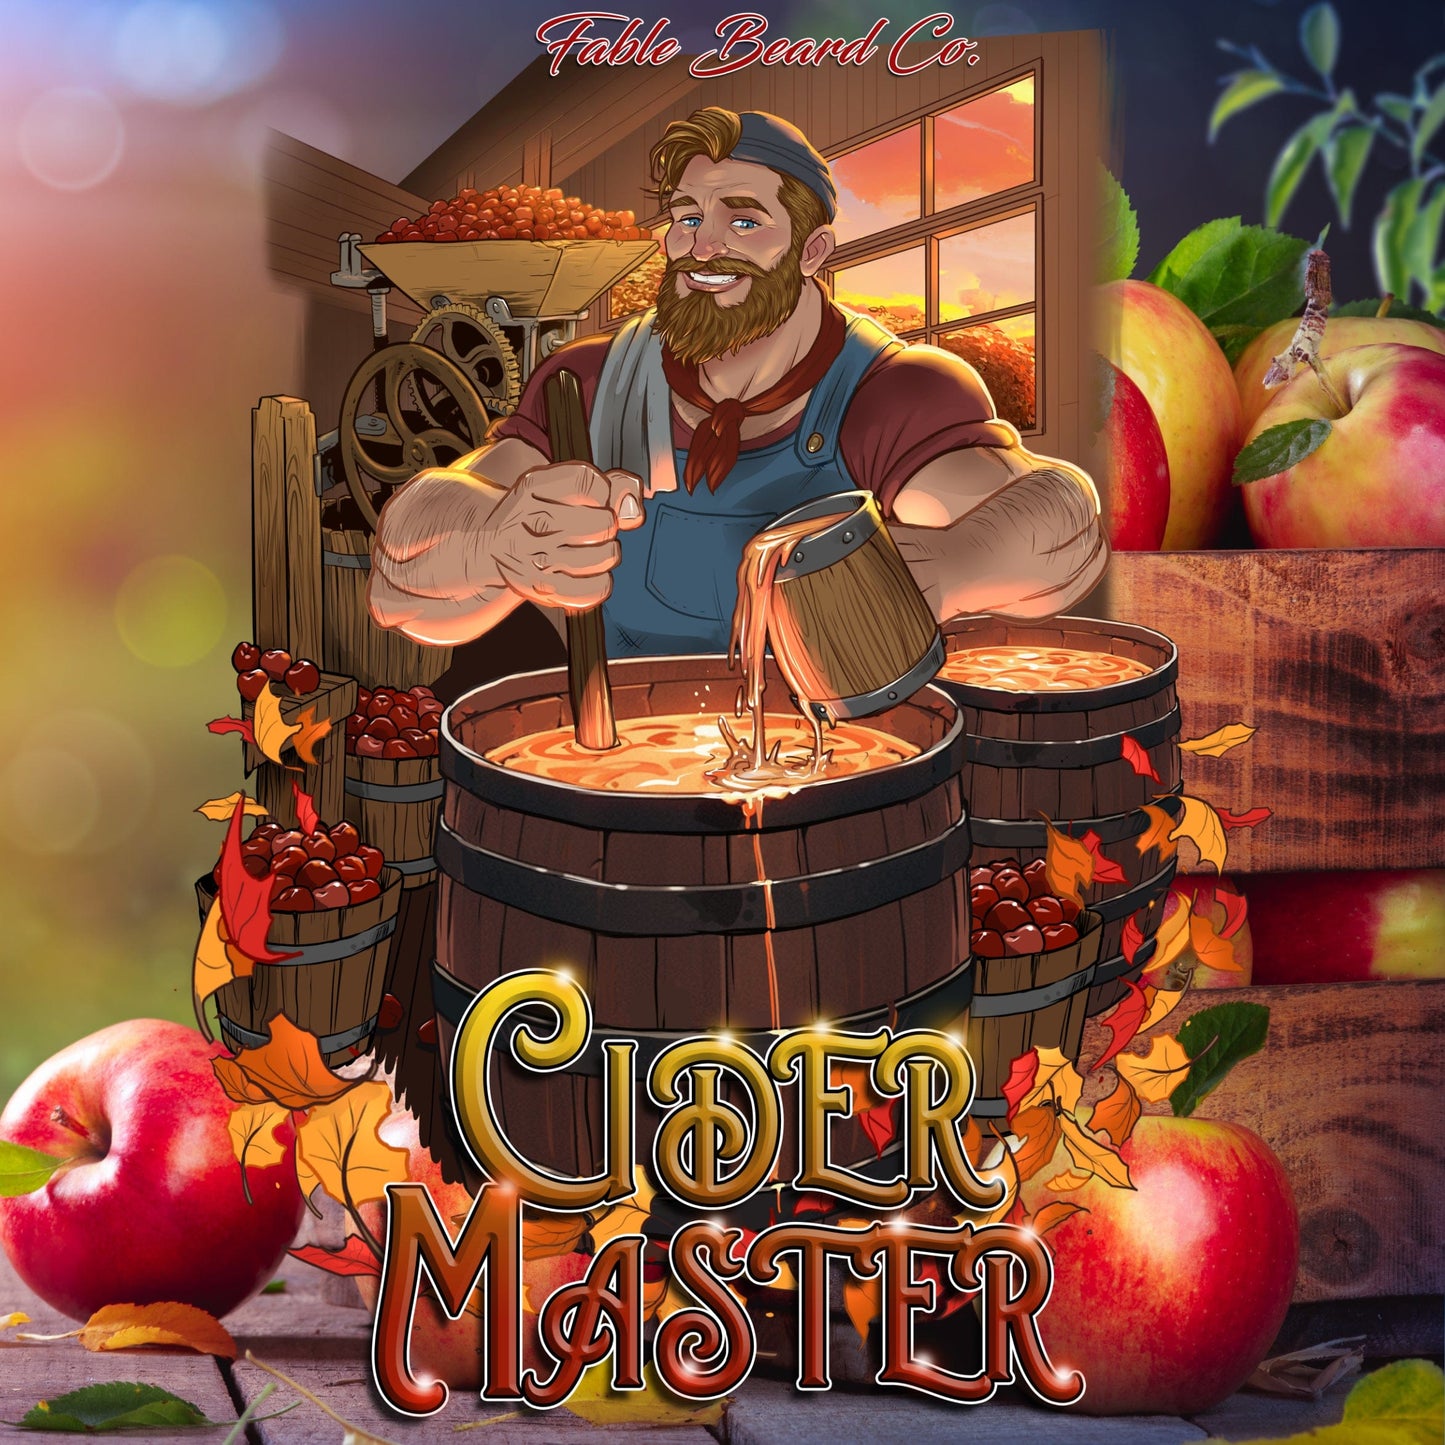 Cider Master - Apple Cider Memories Complete Balm Kit